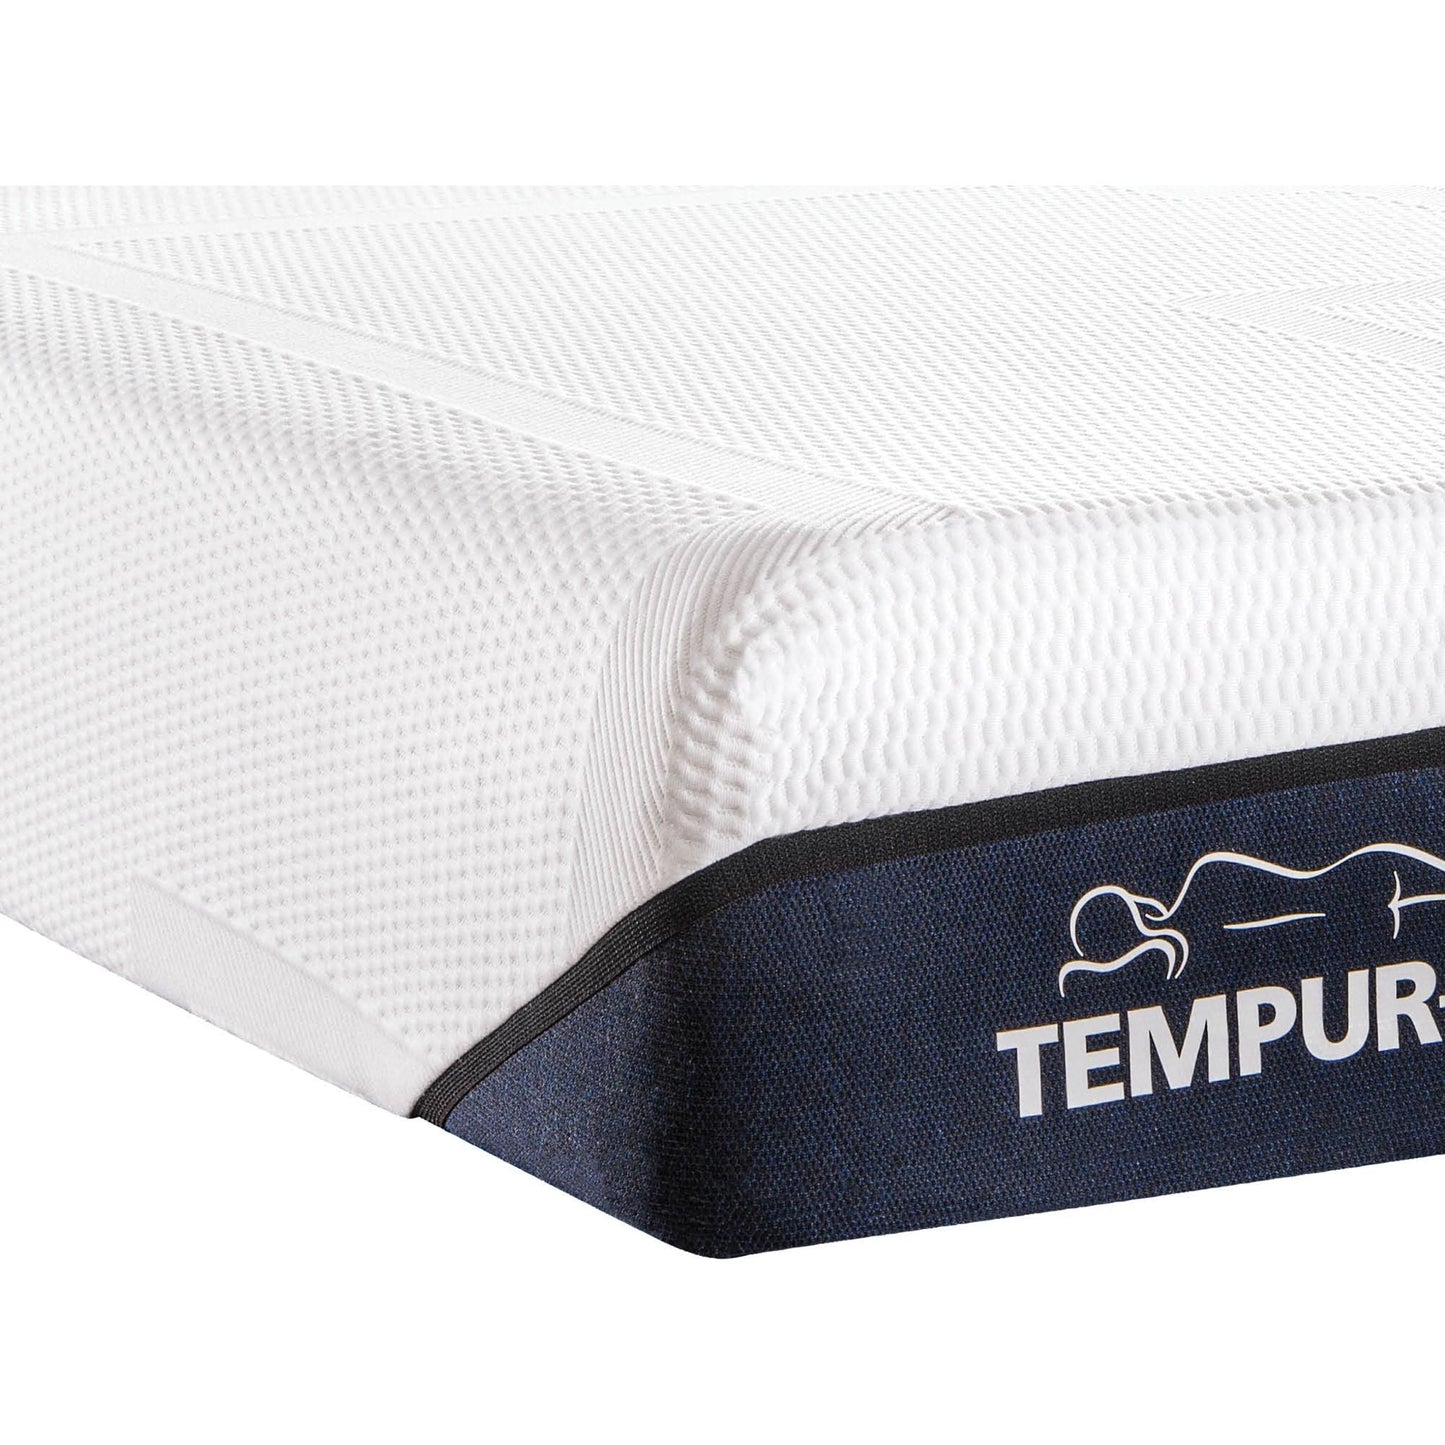 Tempur-Pedic Tempur-Sense Medium Memory Foam 11 inch Mattress